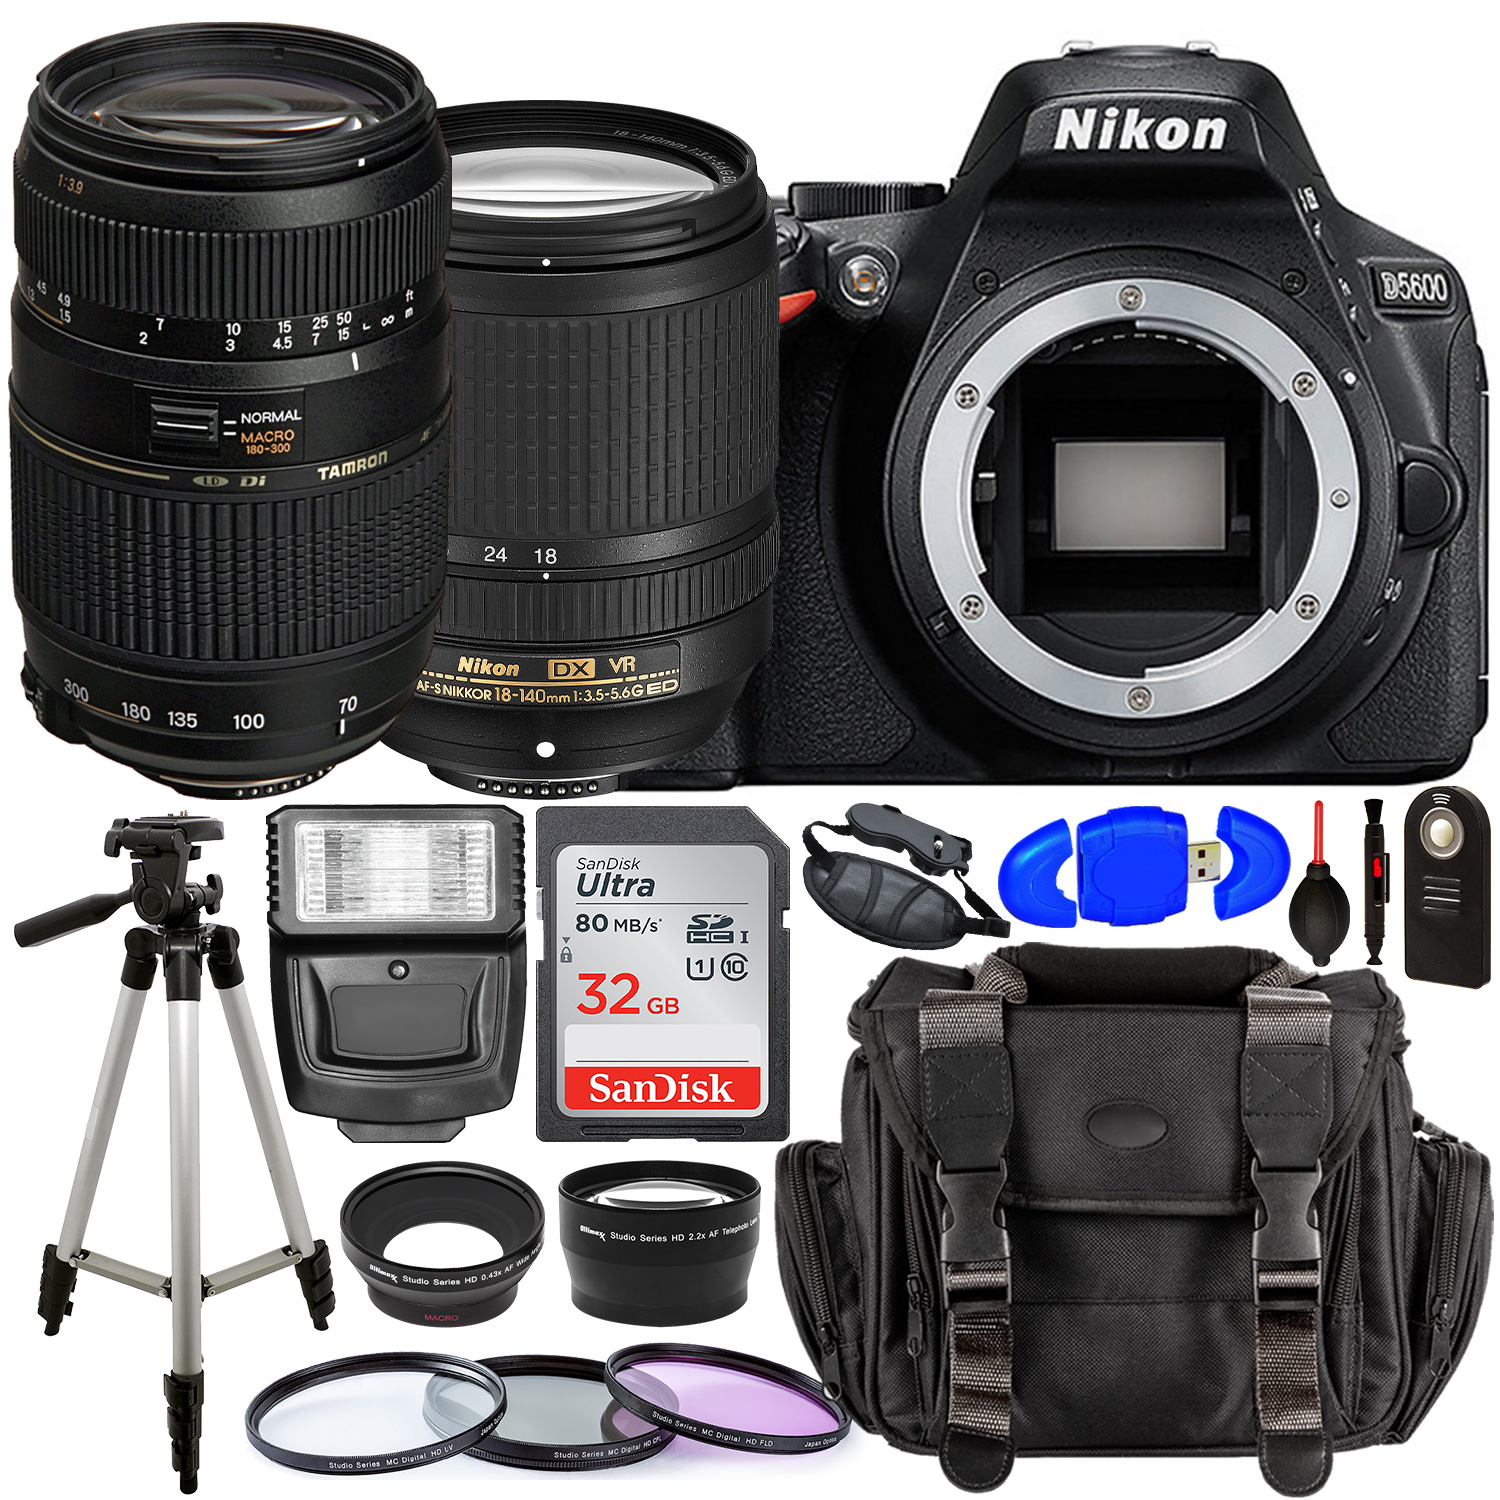 Nikon D5600 DSLR Camera with 18-140mm Lens (Black) â?? 1576 with Tamron 70-300mm Lens for Nikon AF - AF017NII-700 and Accessory Bundle